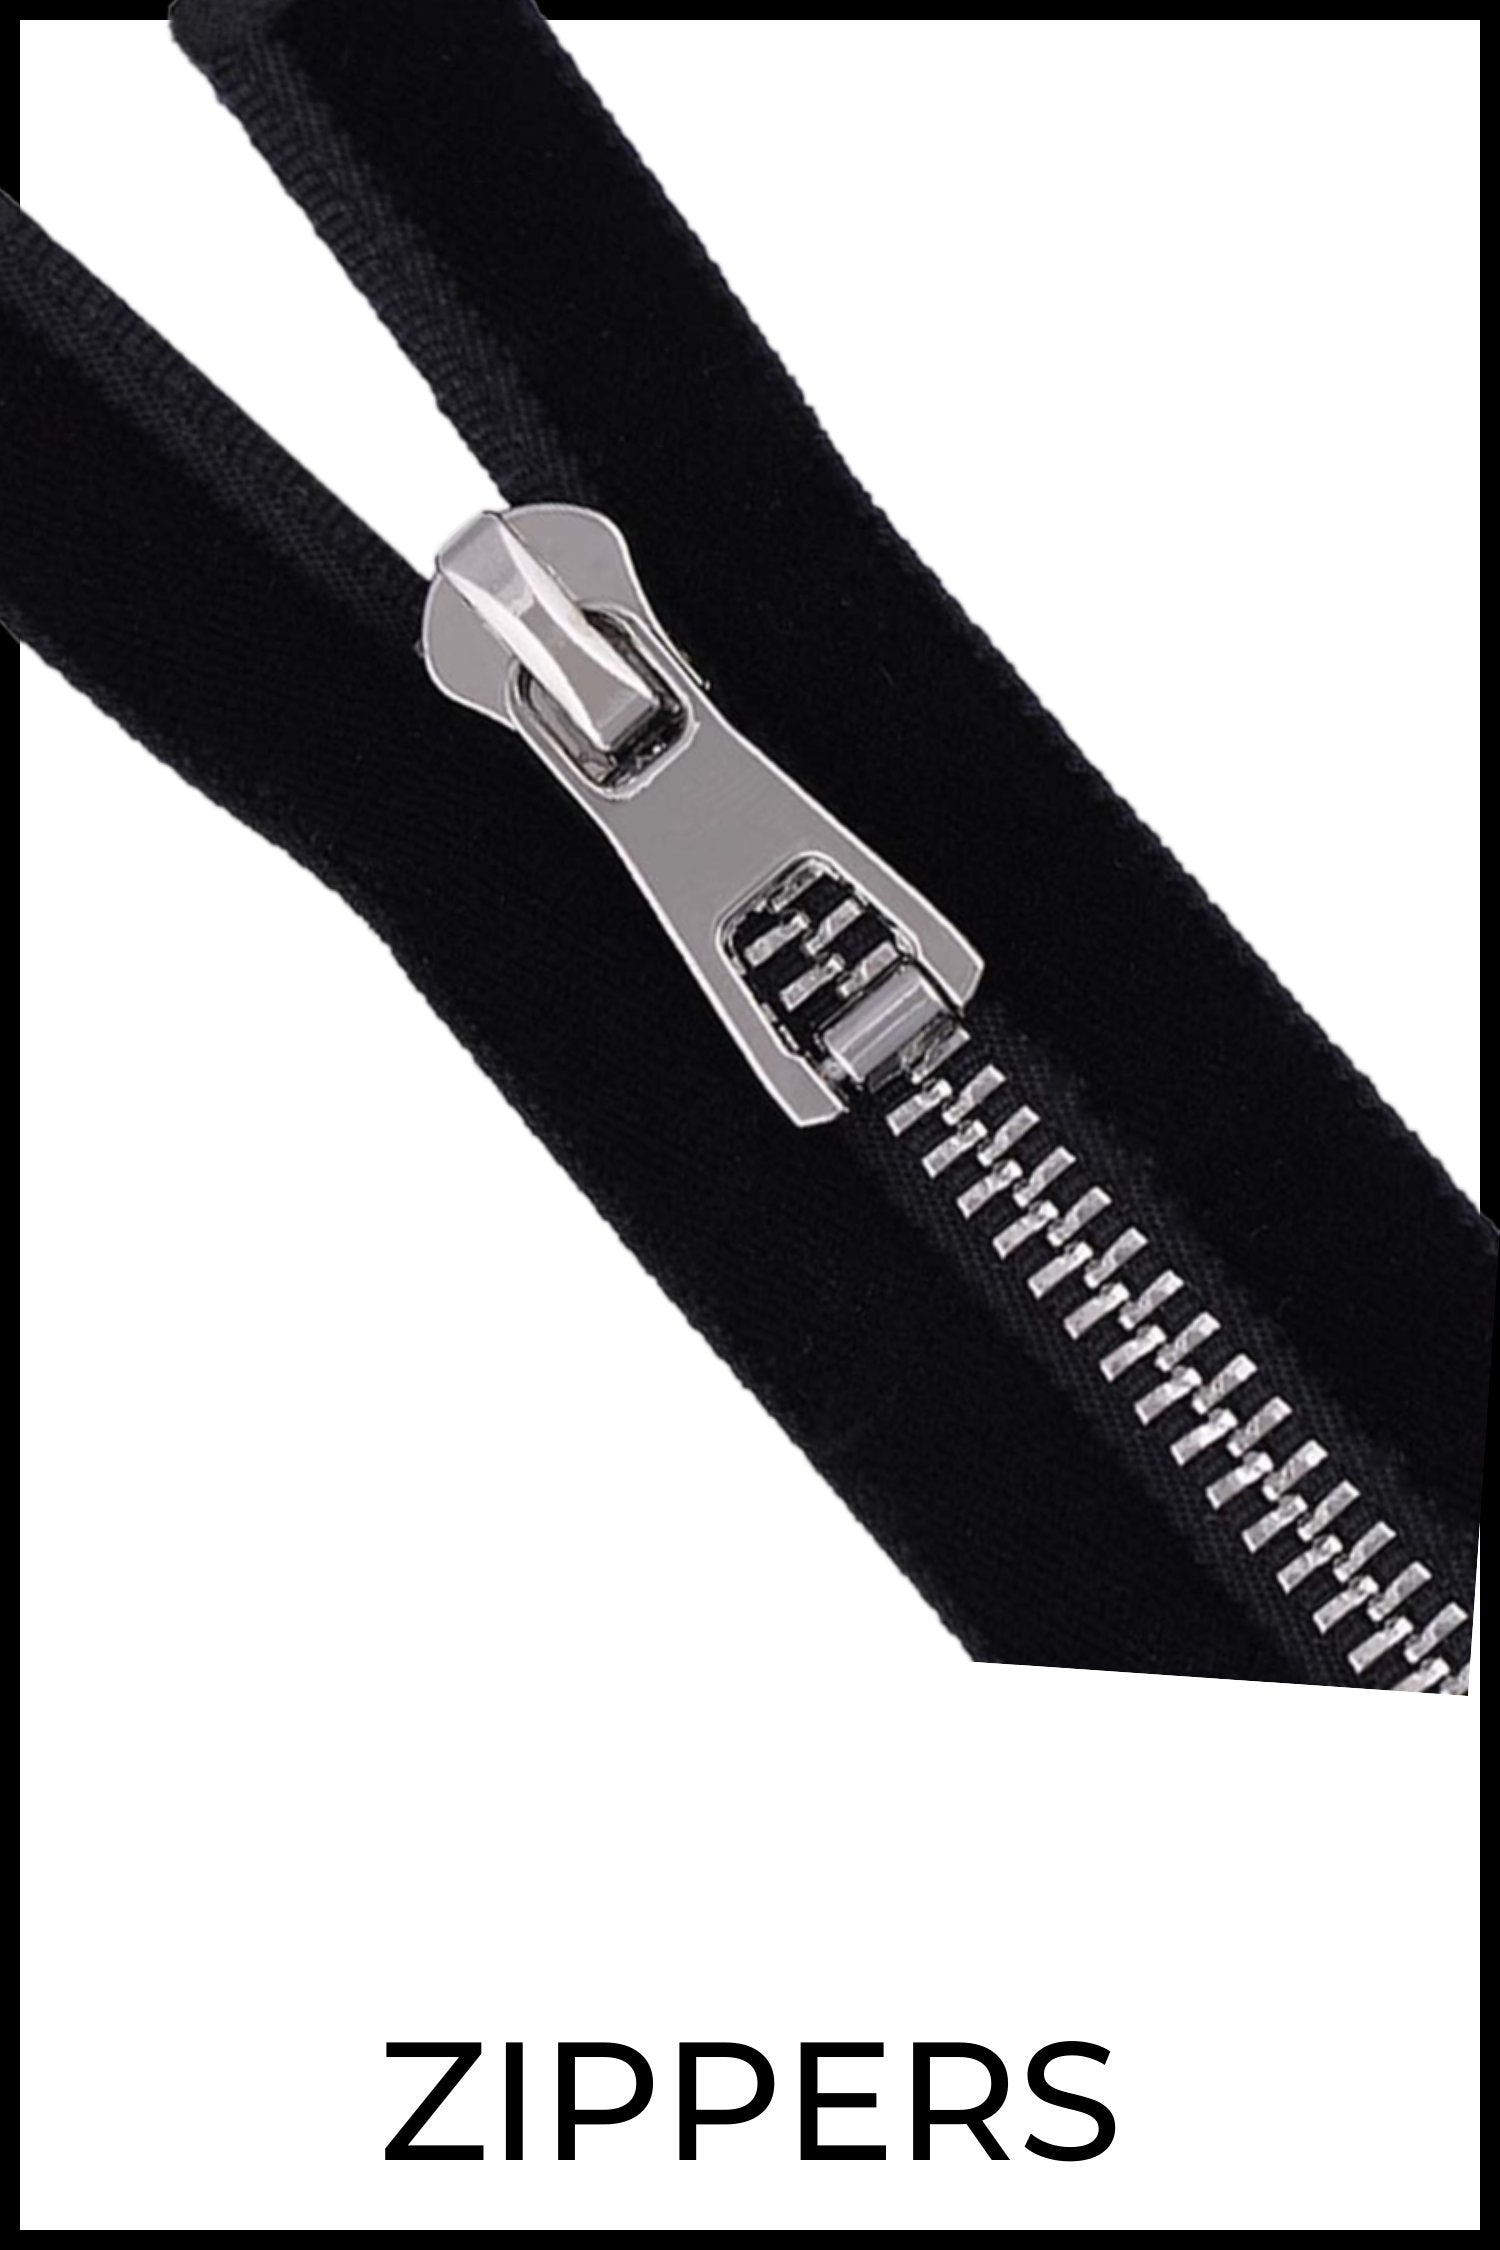 Make-A-Zipper Nylon Zippers  Zipper Shipper Sewing Supplies